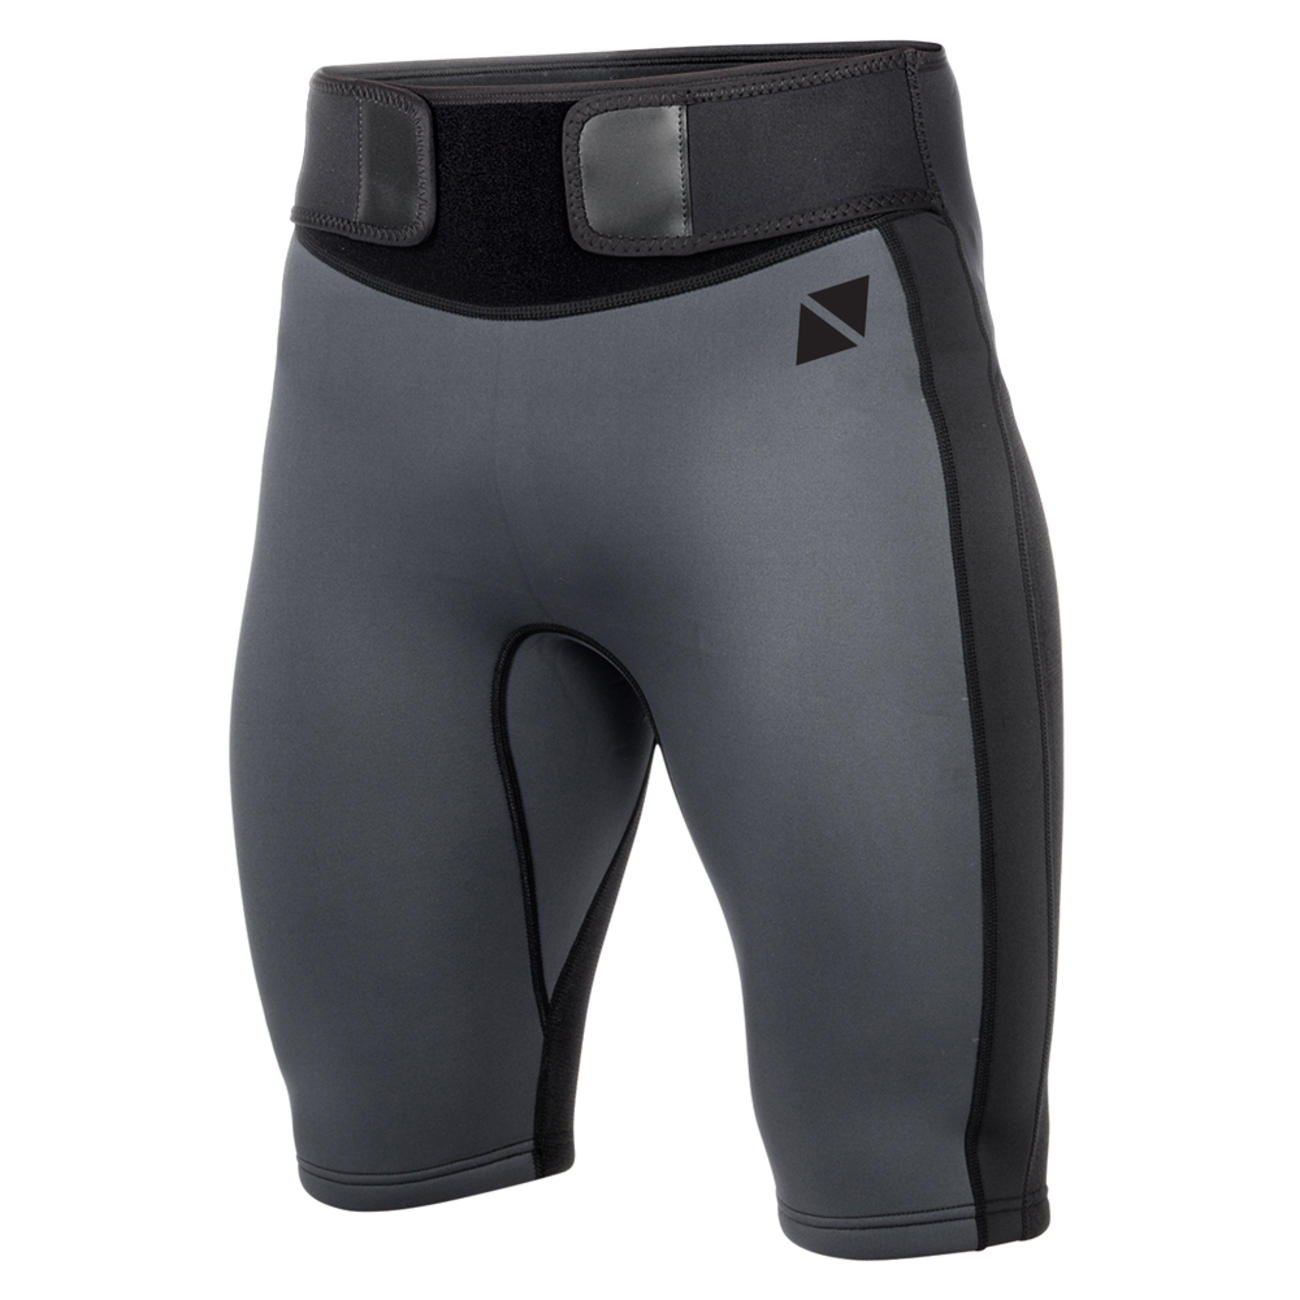 Ultimate Shorts Neoprene 2mm ウエストベルト付きウェットパンツ